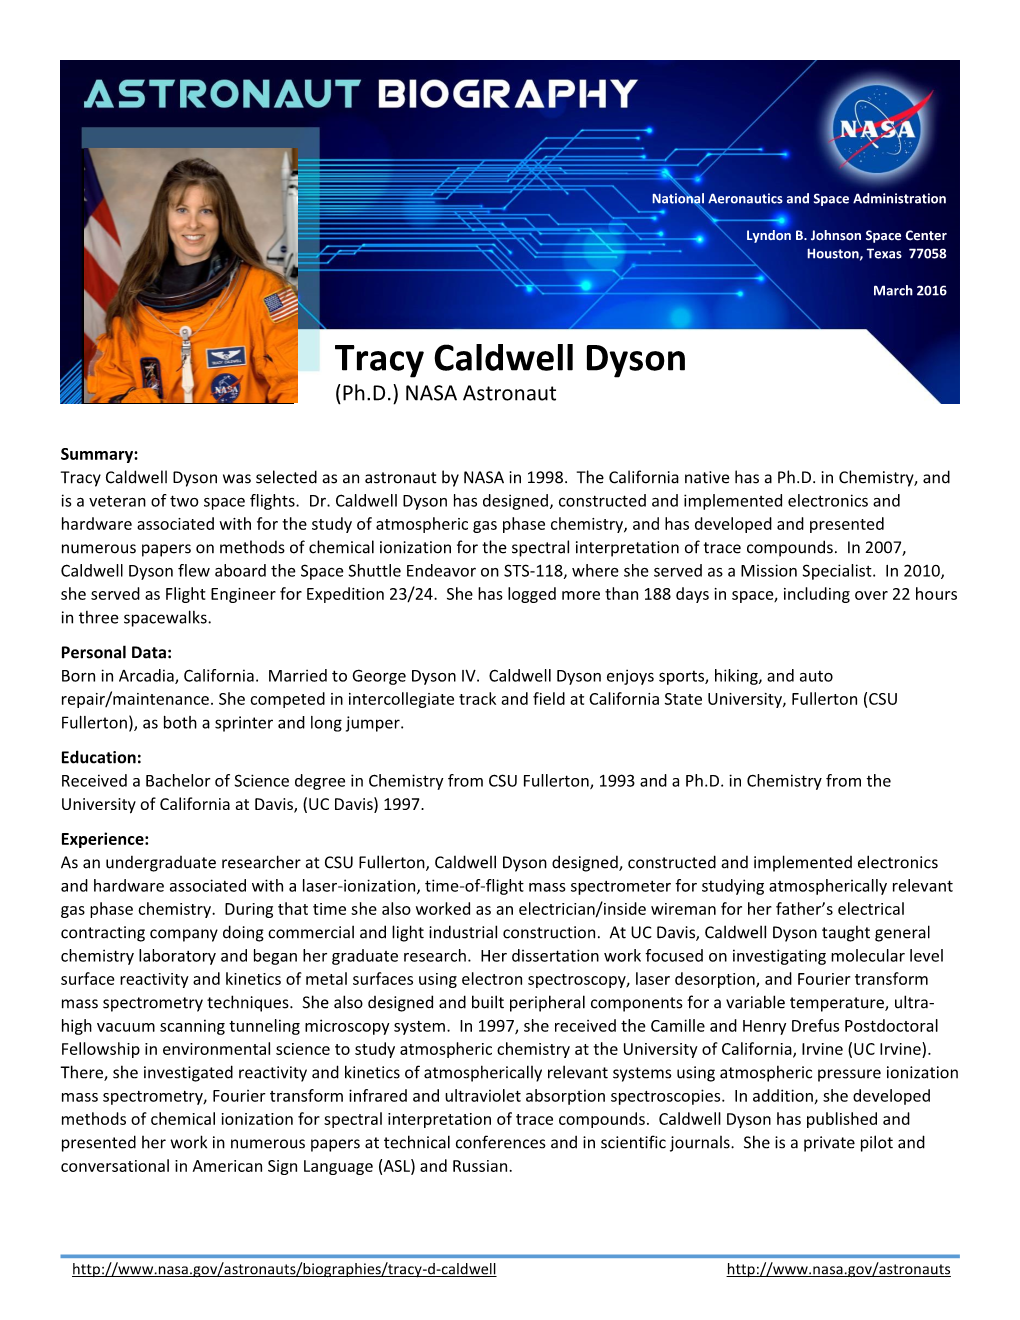 Tracy Caldwell Dyson (Ph.D.) NASA Astronaut